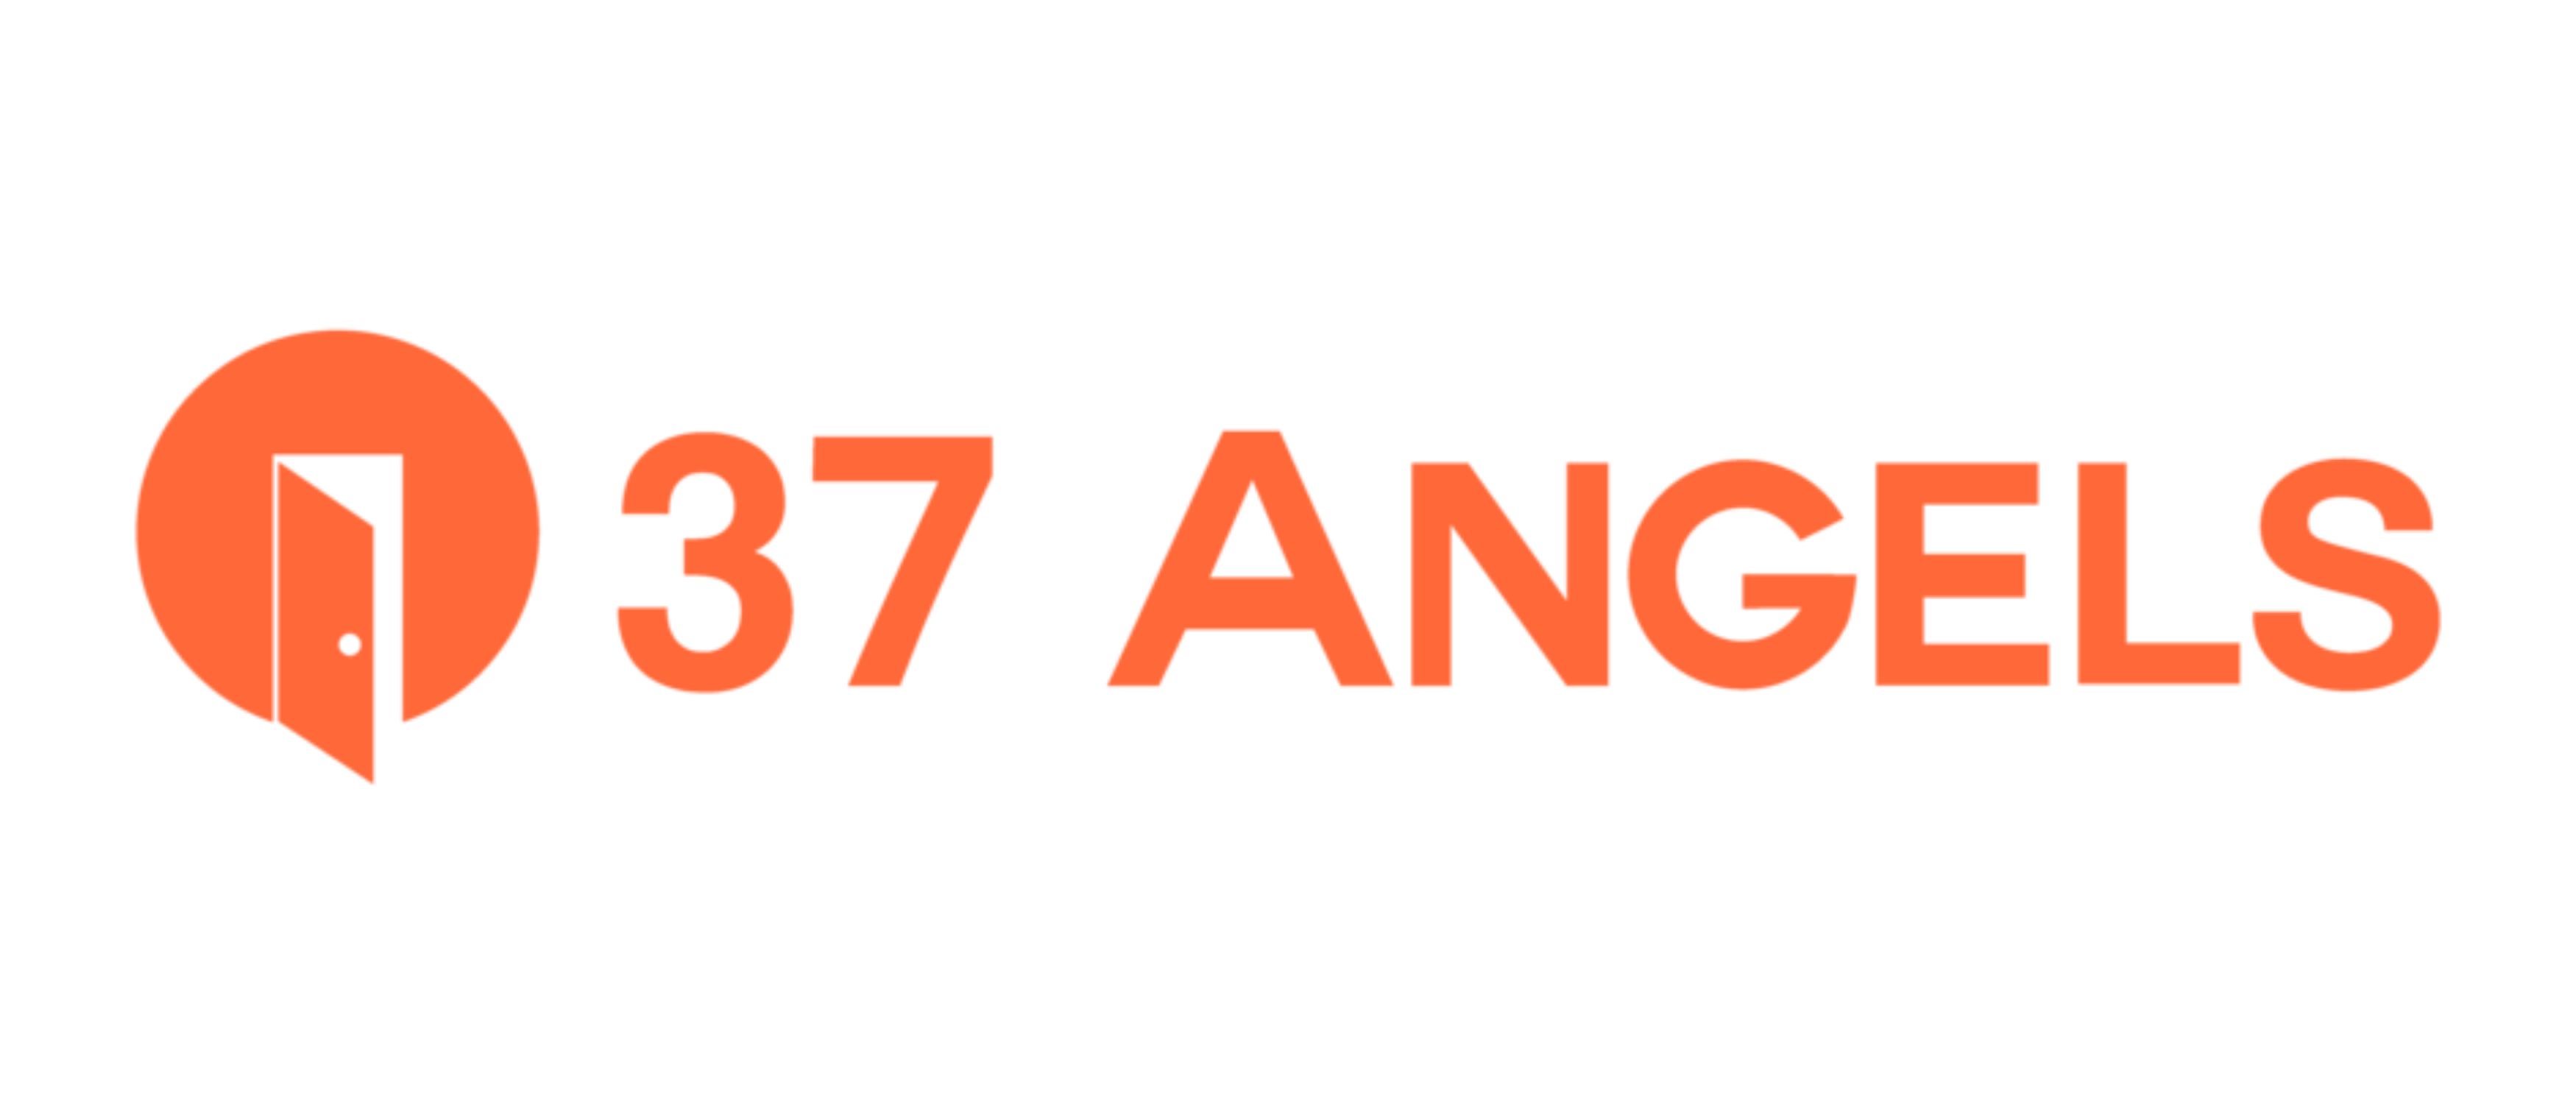 37 Angels